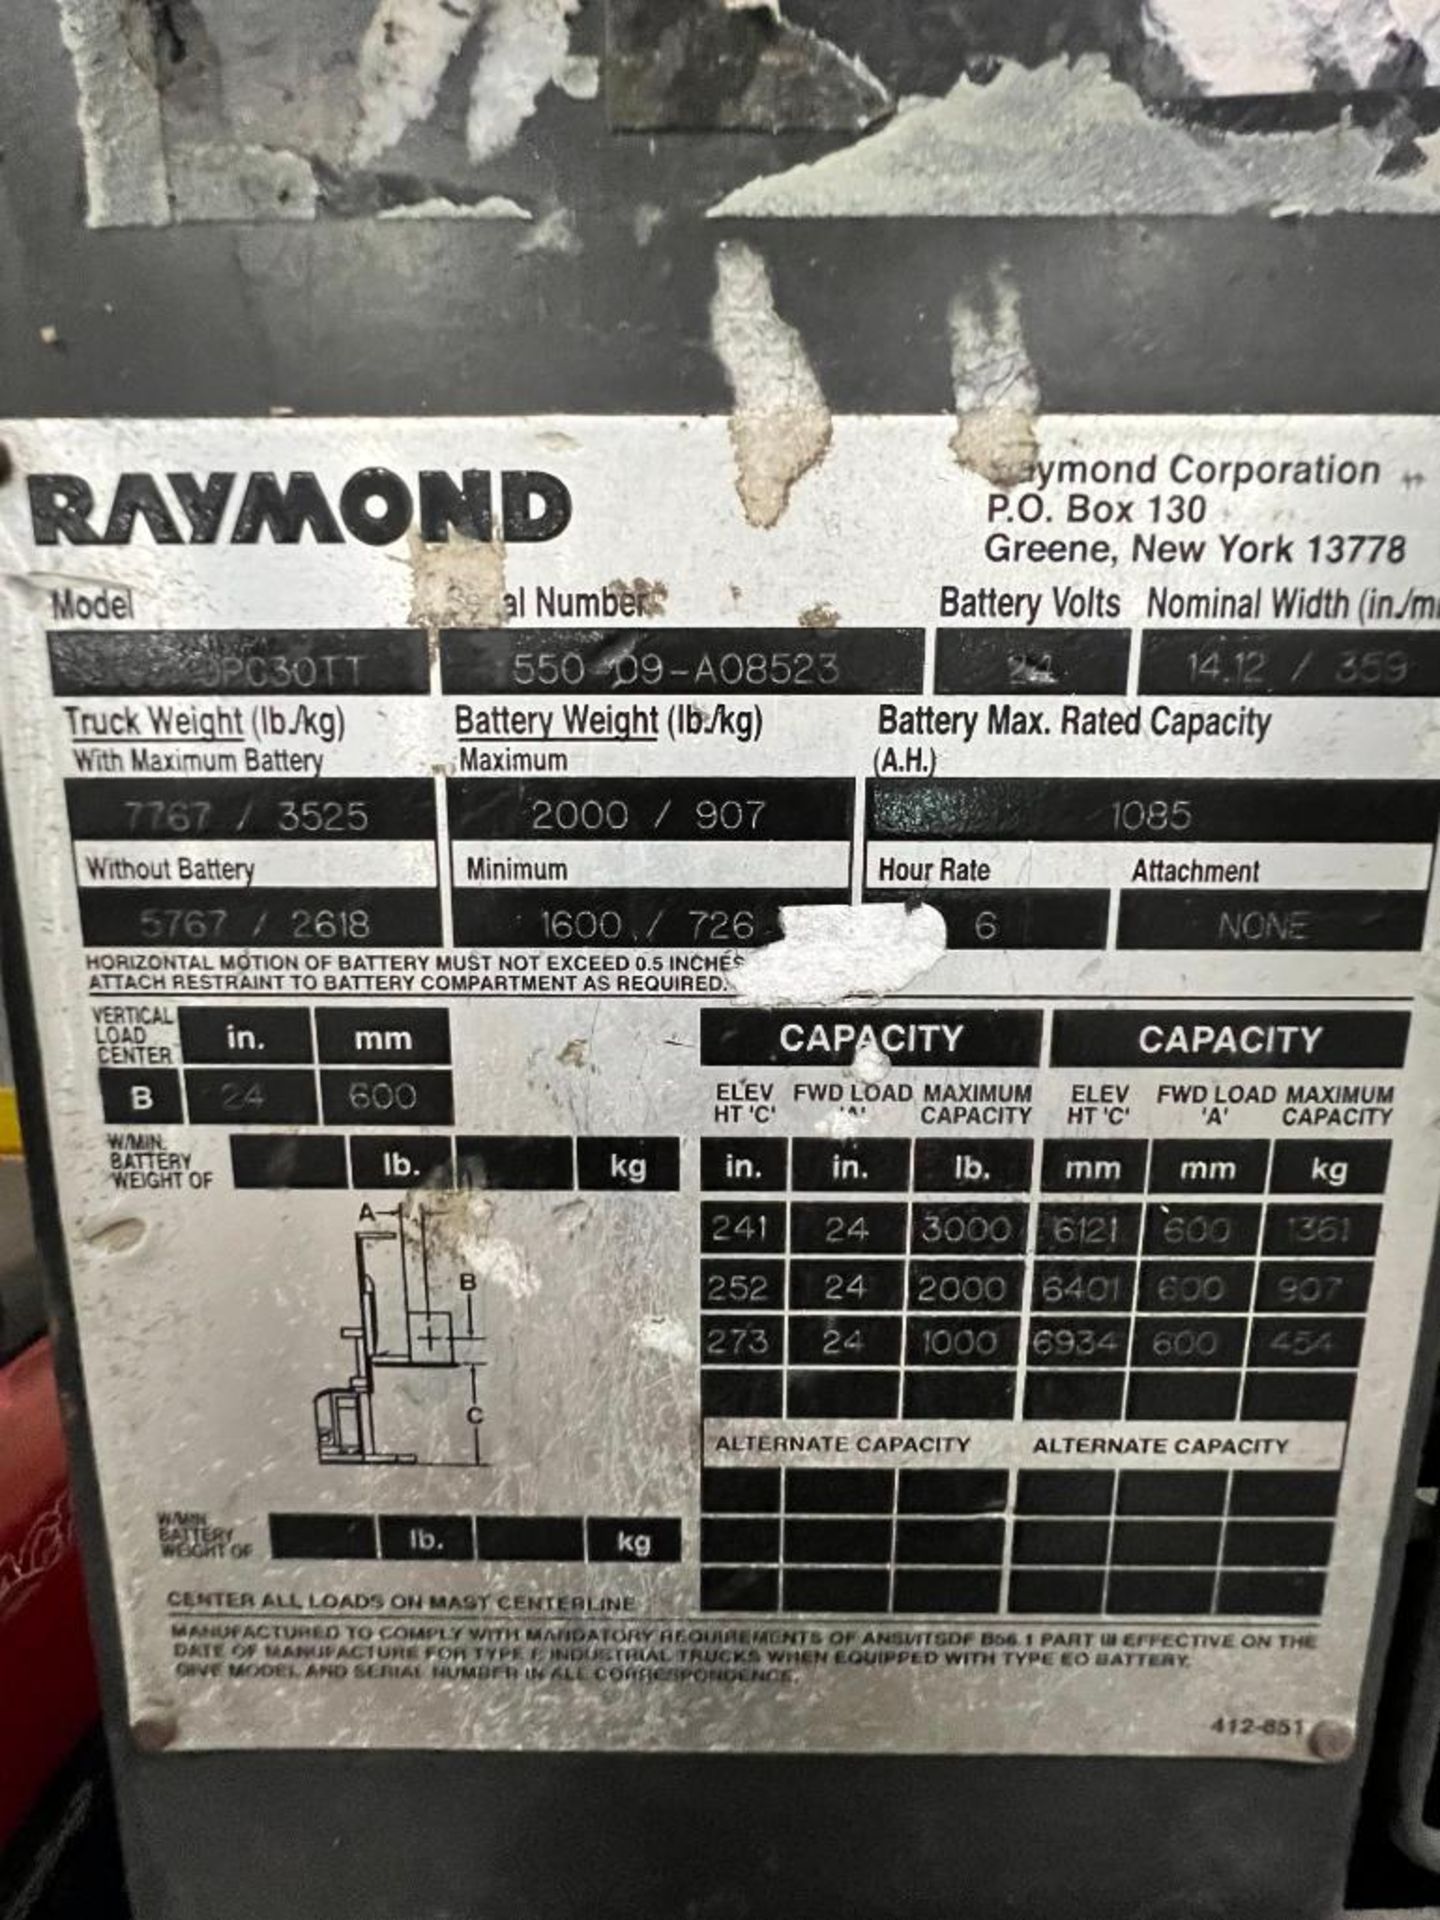 Raymond 3,000 LB. Order Picker, Model 550-OPC30TT, S/N 550-09-A08523, HD Hours 17,502 ***Buyer is Re - Image 4 of 4